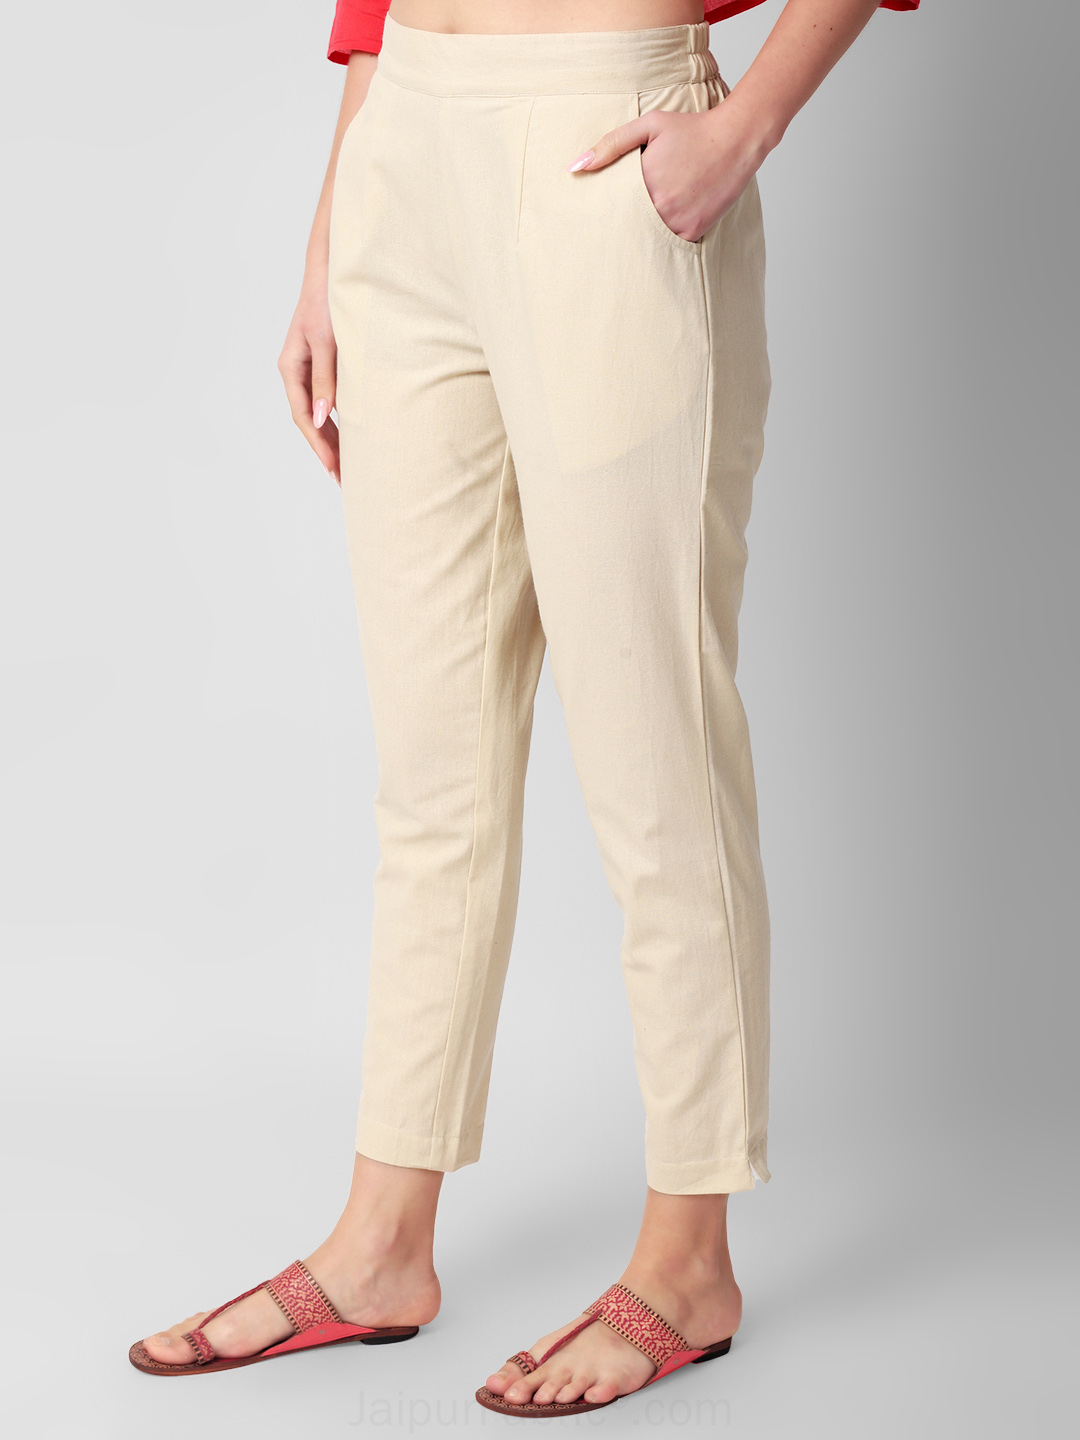 Women's Trouser Pants & Leggings | Nordstrom